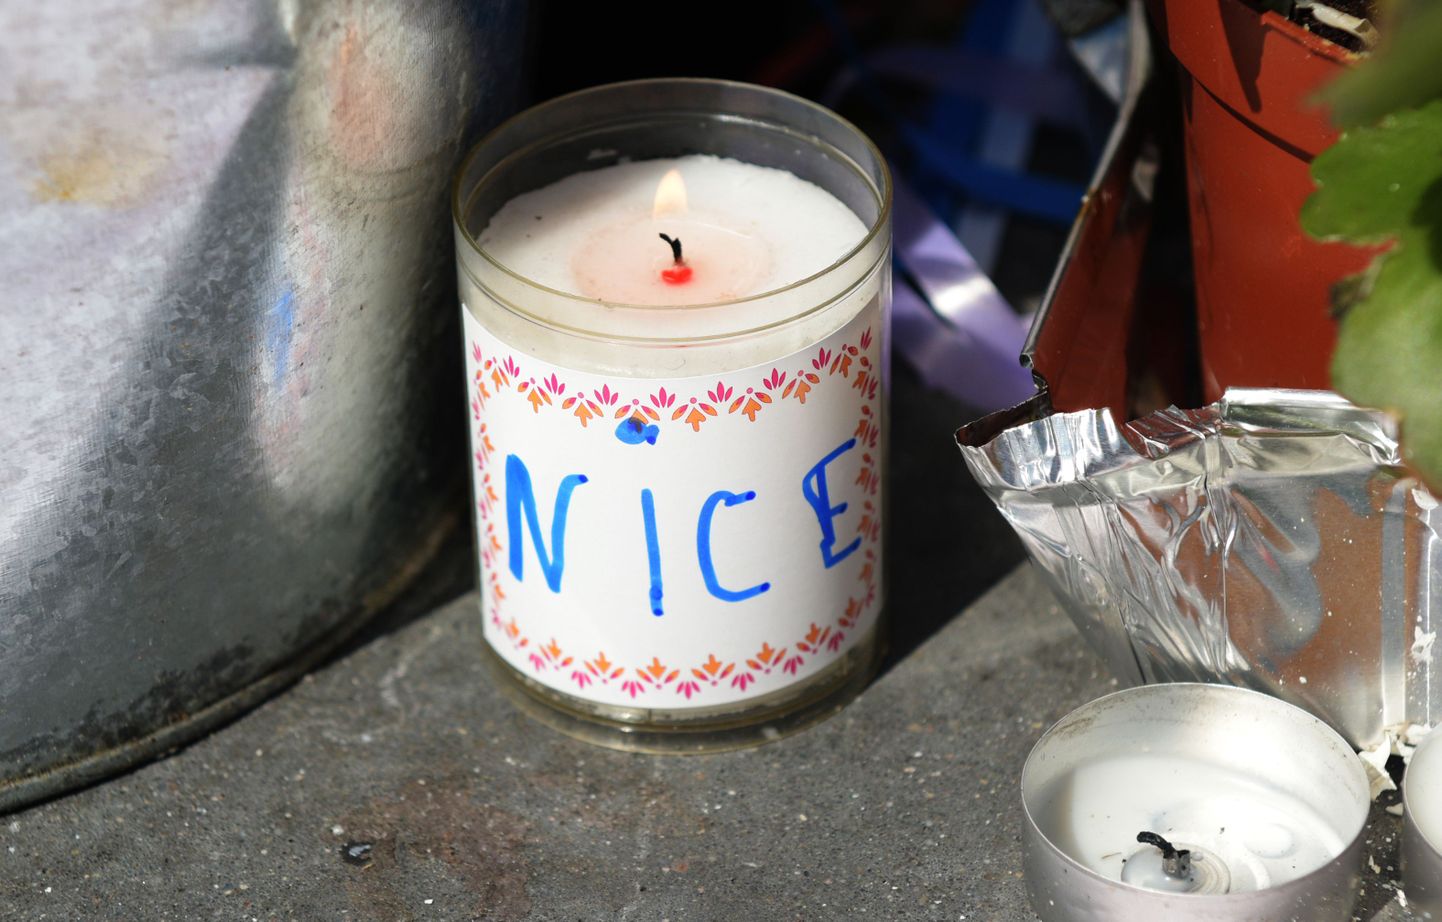 Дань памяти погибшим во время теракта в Ницце. Иллюстративное фото.